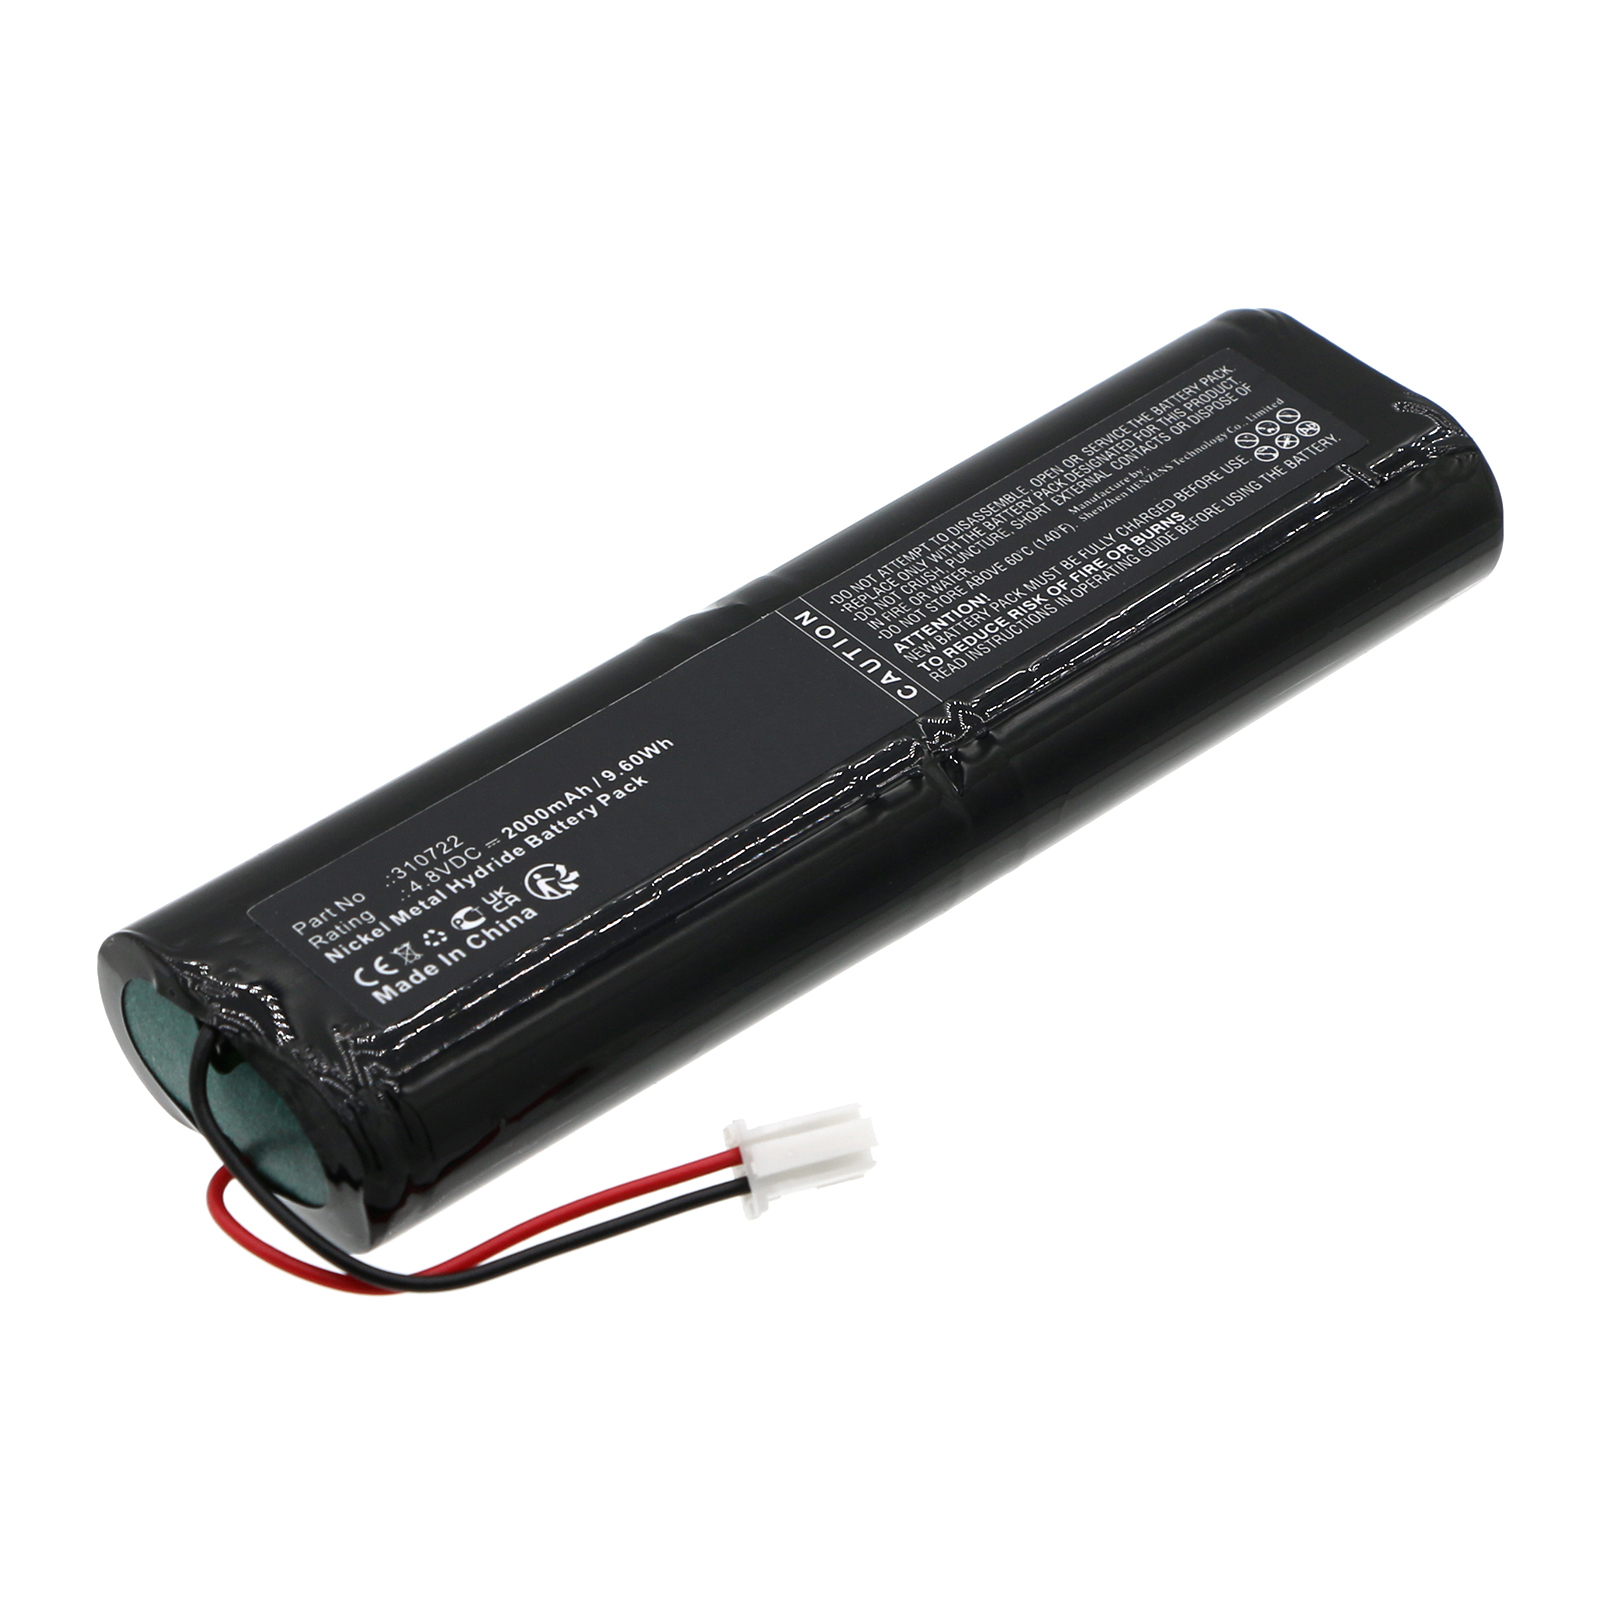 Batteries for Bartec BenkeEquipment